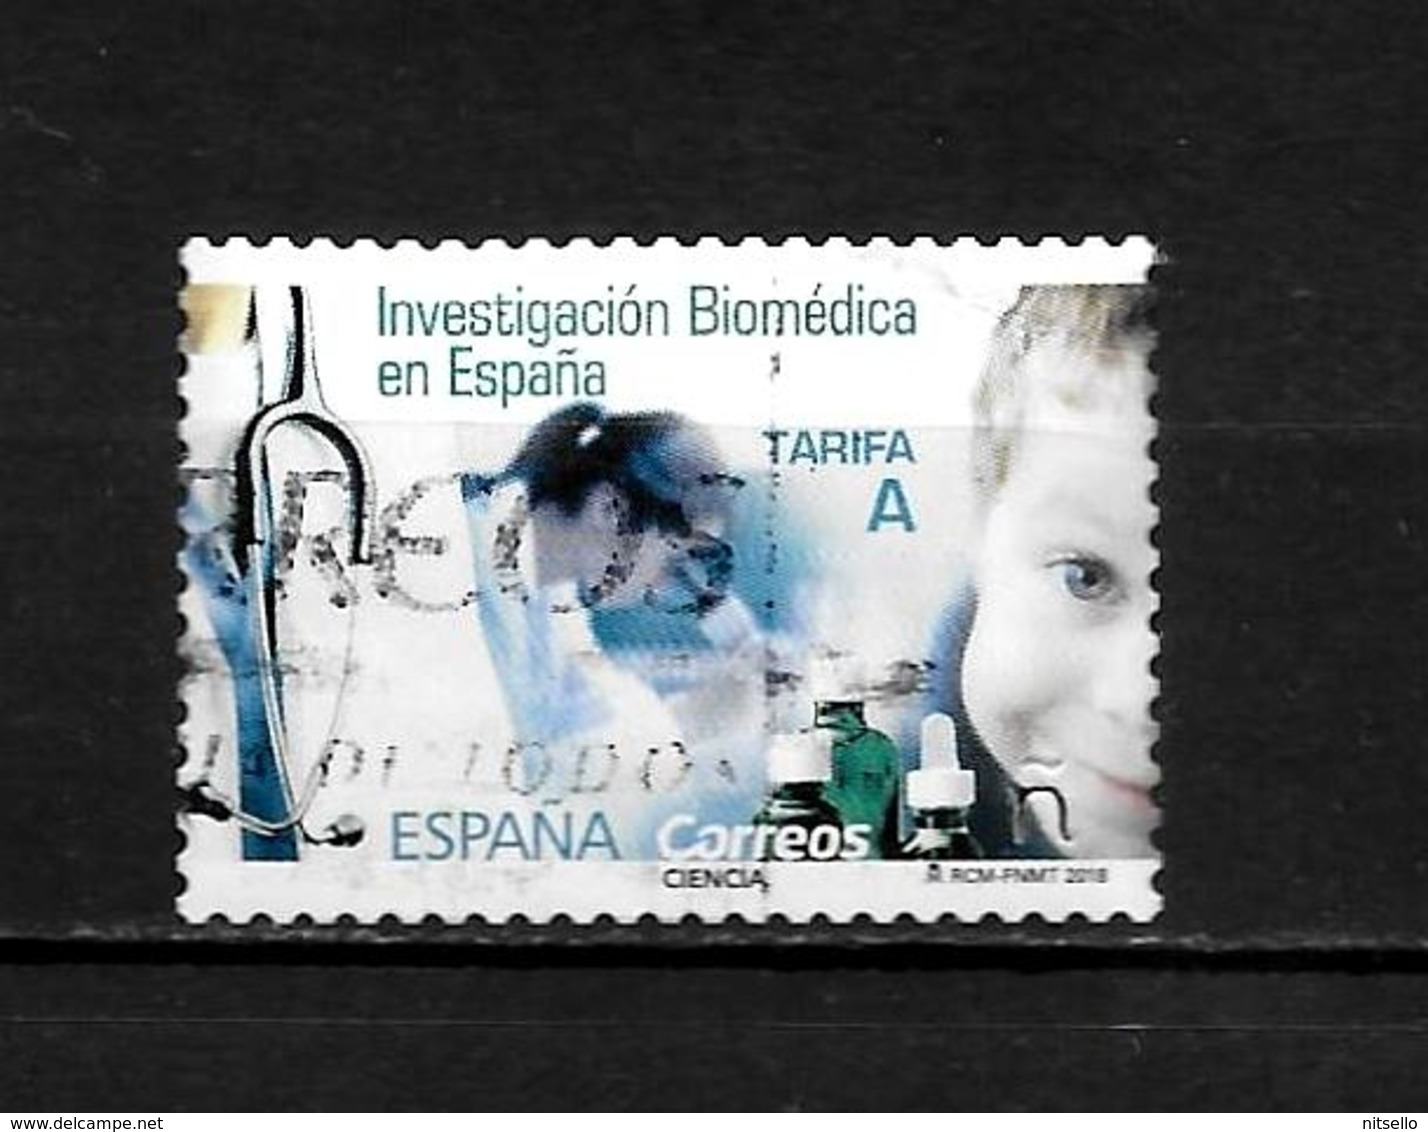 LOTE 2030 ///  ESPAÑA 2018   INVESTIGACION BIOMEDICA EN ESPAÑA  ¡¡¡ OFERTA - LIQUIDATION !!! JE LIQUIDE !!! - Gebruikt